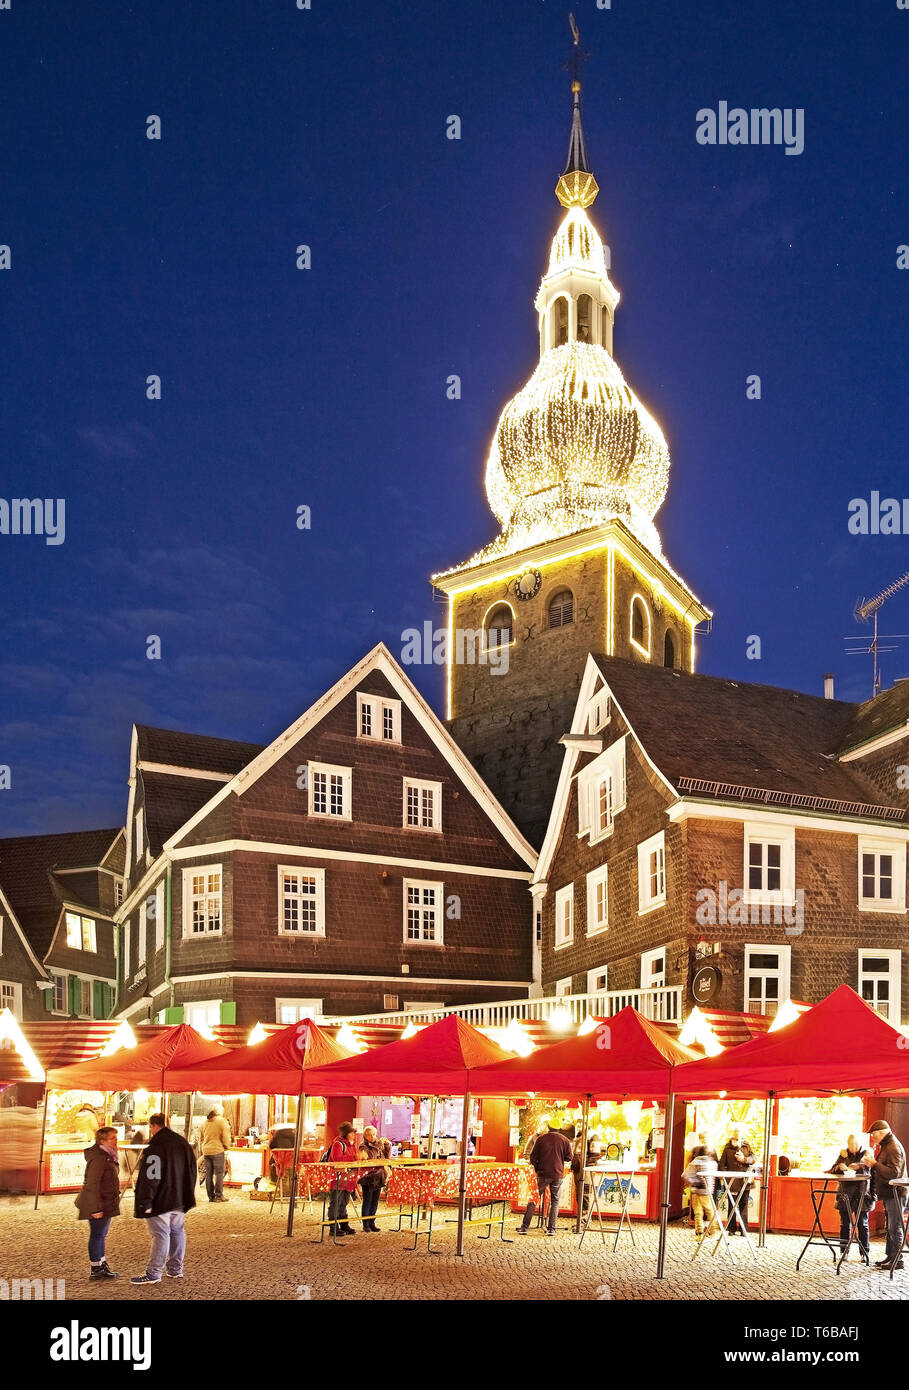 Vieille ville historique de Lennep avec marché de Noël et de l'église évangélique d'Ville, Remscheid, Allemagne Banque D'Images